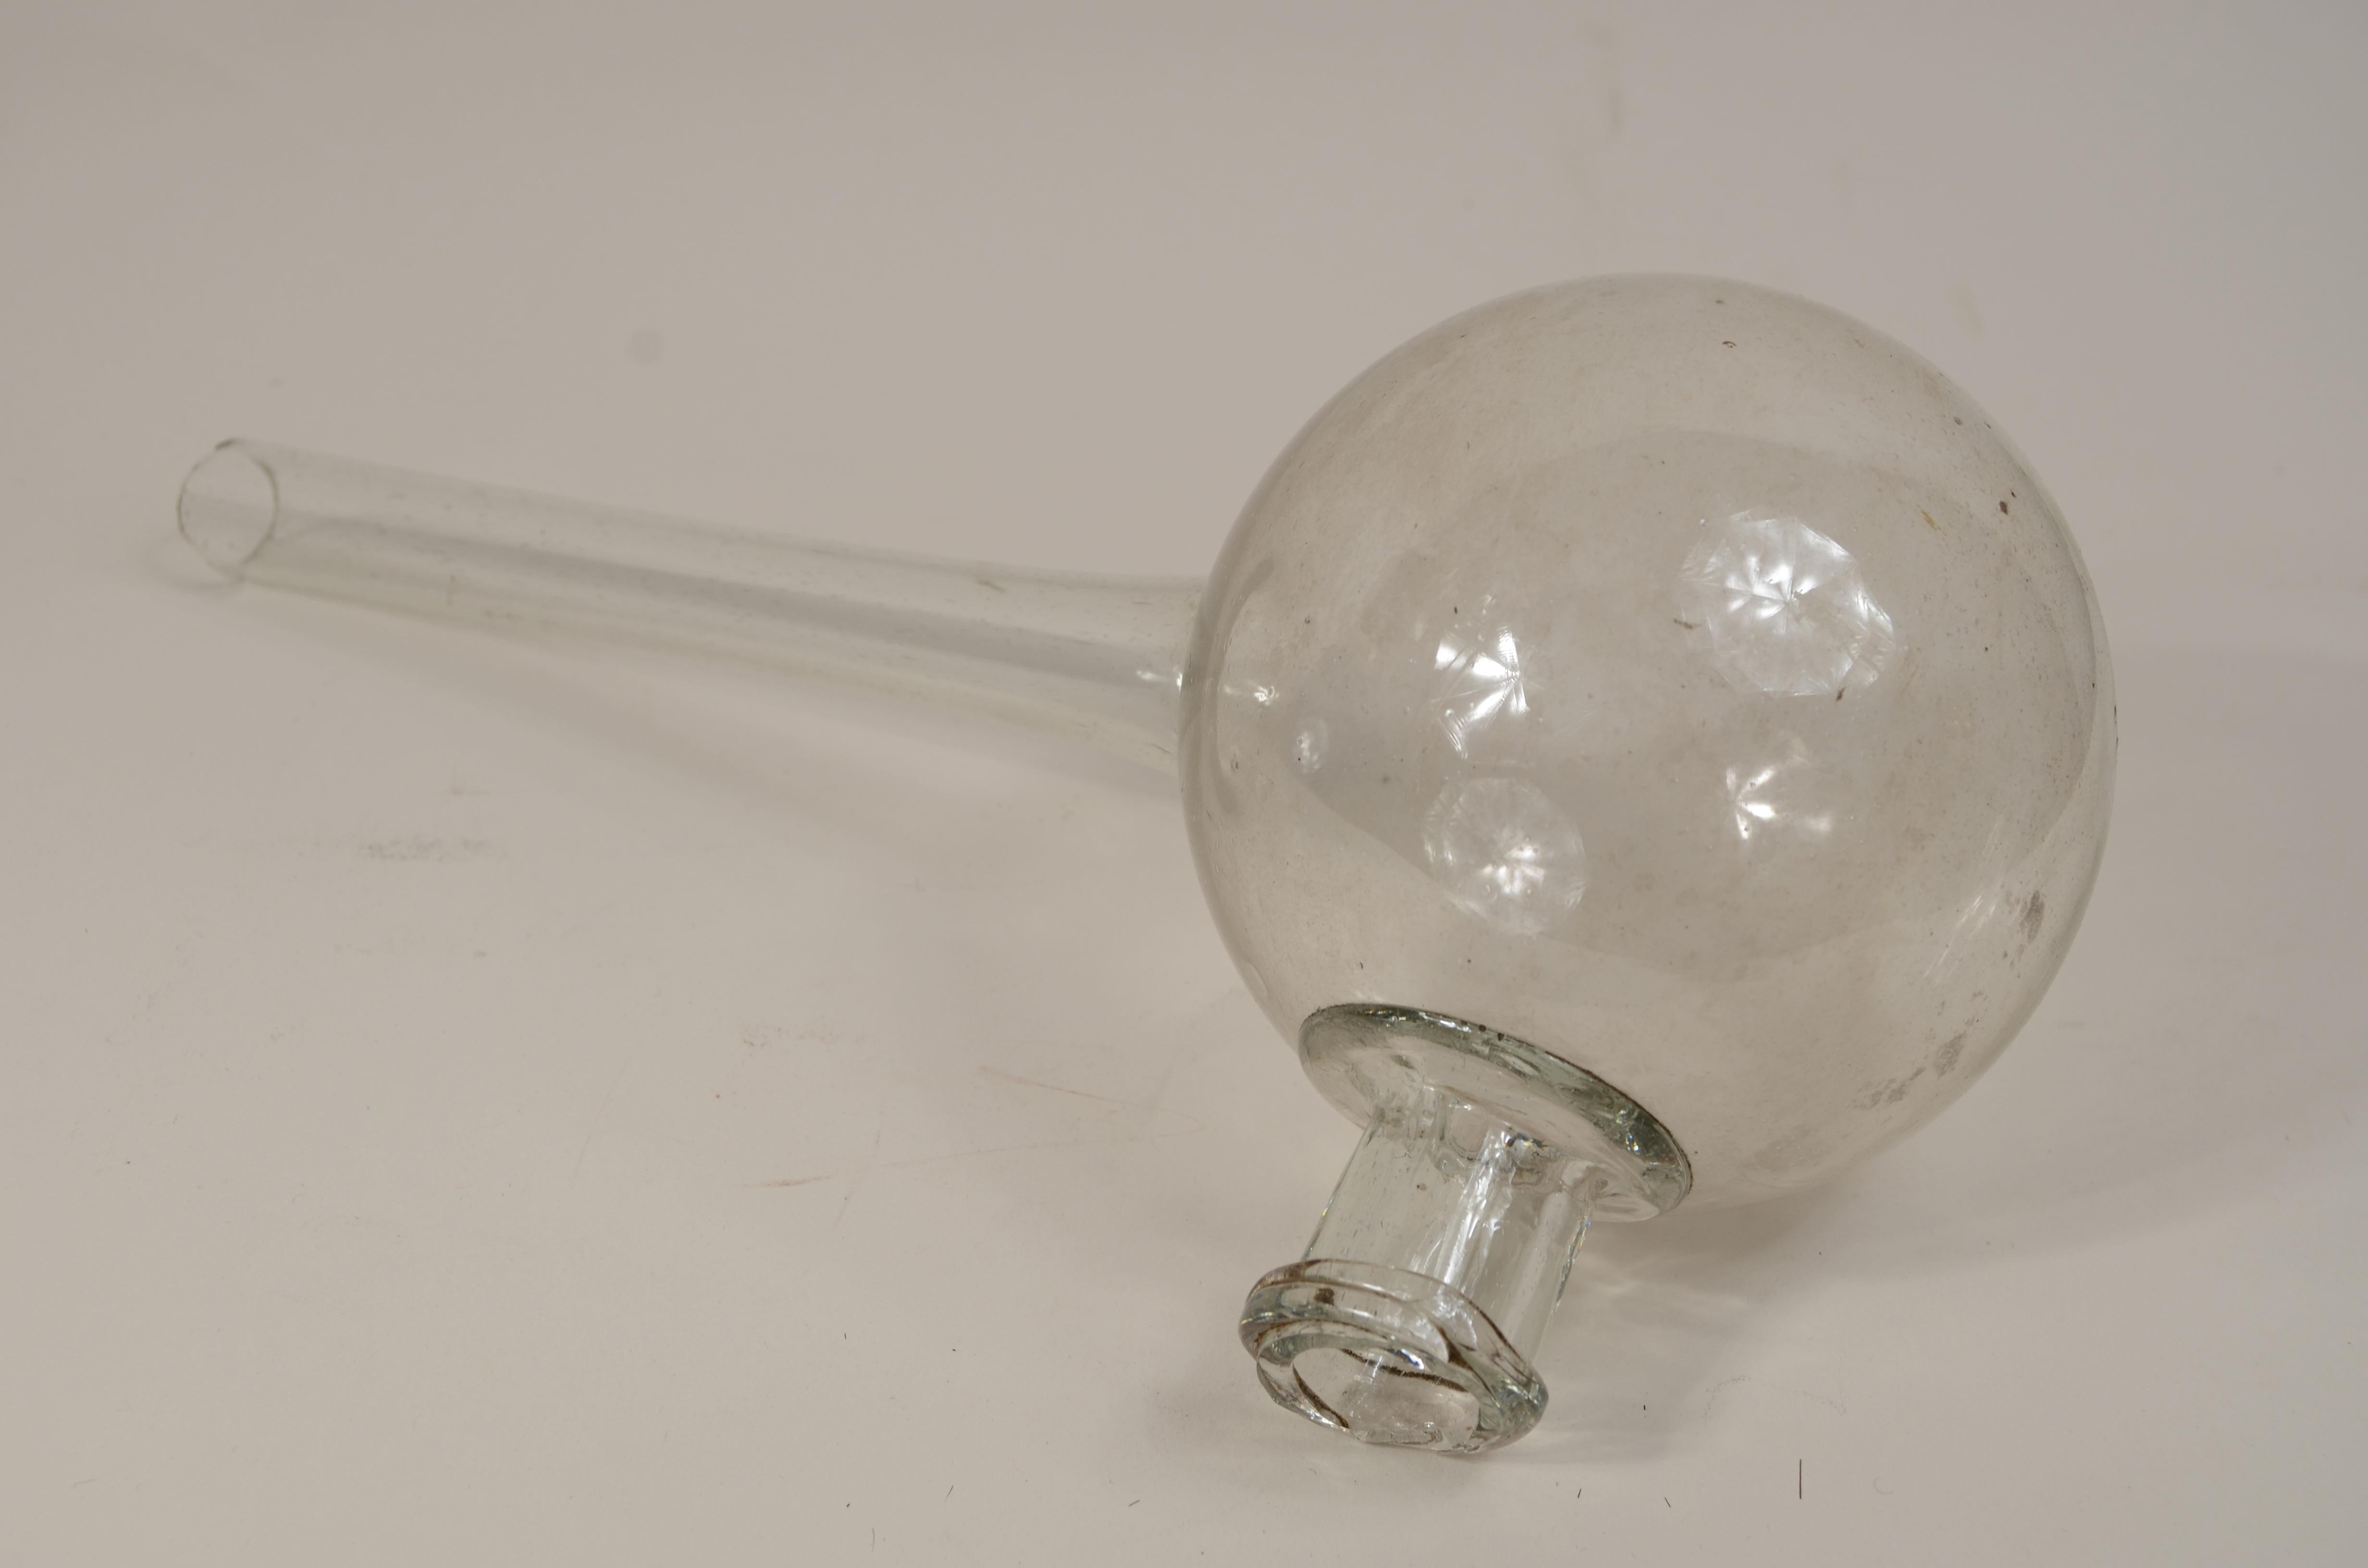 Eine durchsichtige Laborretorte aus geblasenem Glas aus dem frühen 19. Jahrhundert, die für die Destillation verwendet wurde, hat einen kugelförmigen Körper und einen langen Hals in der Mitte. 
Ausgezeichneter Zustand. Maße Länge cm 30 - inch 11.8,